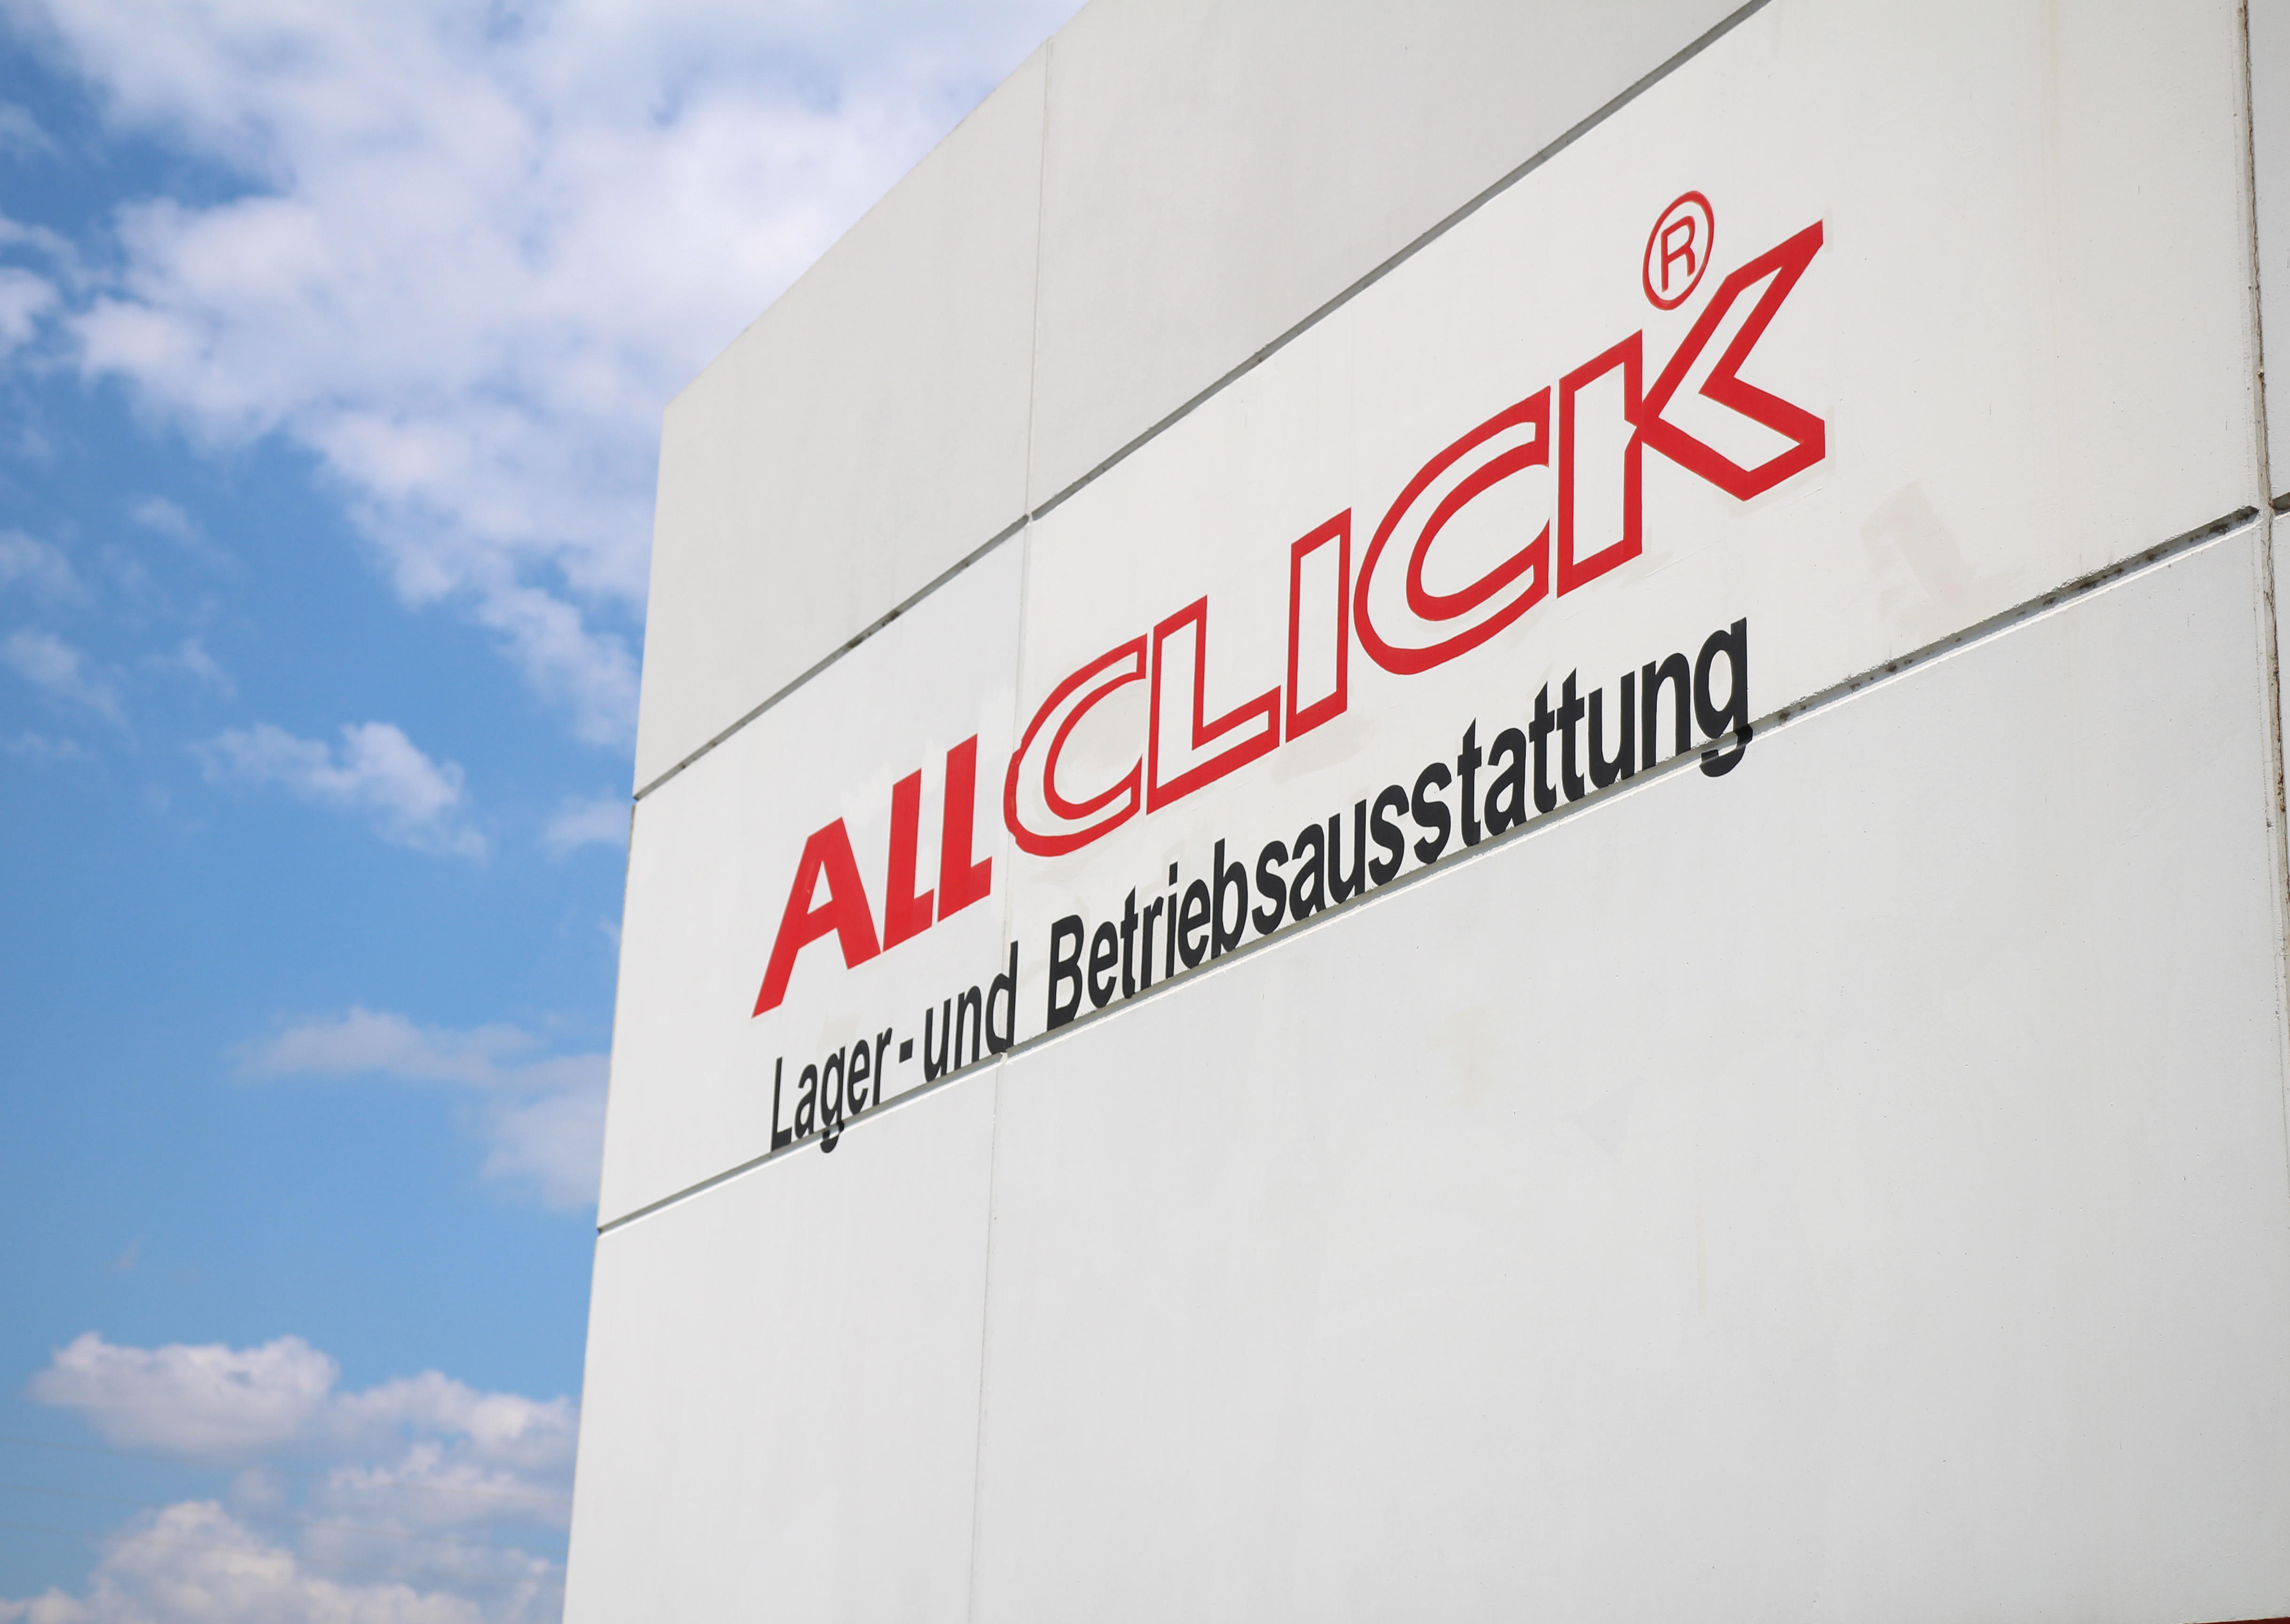 Bilder ALLCLICK Austria GmbH